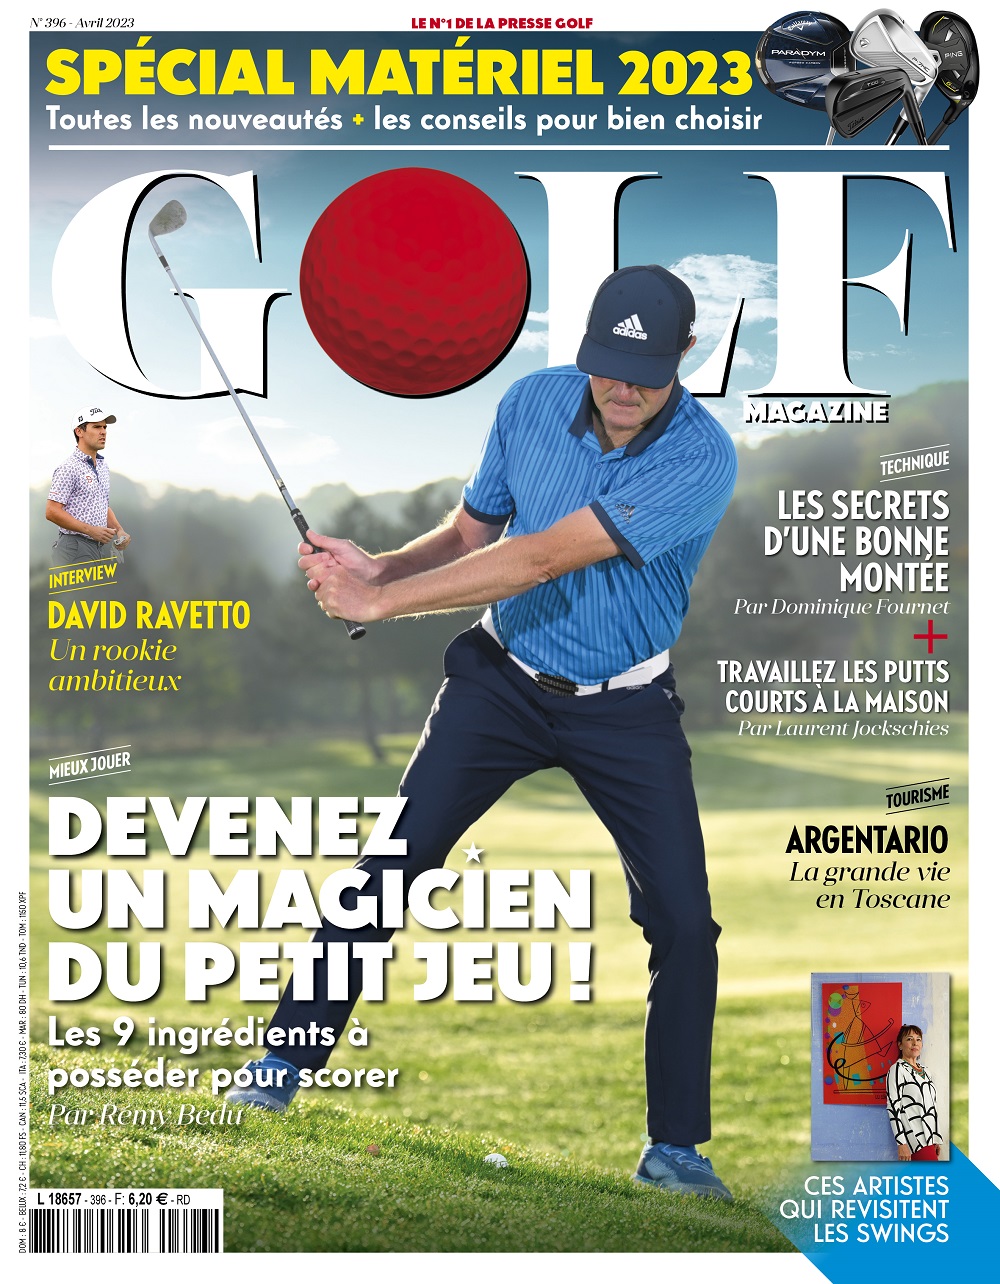 Le Golf Magazine n°396 est en kiosque !